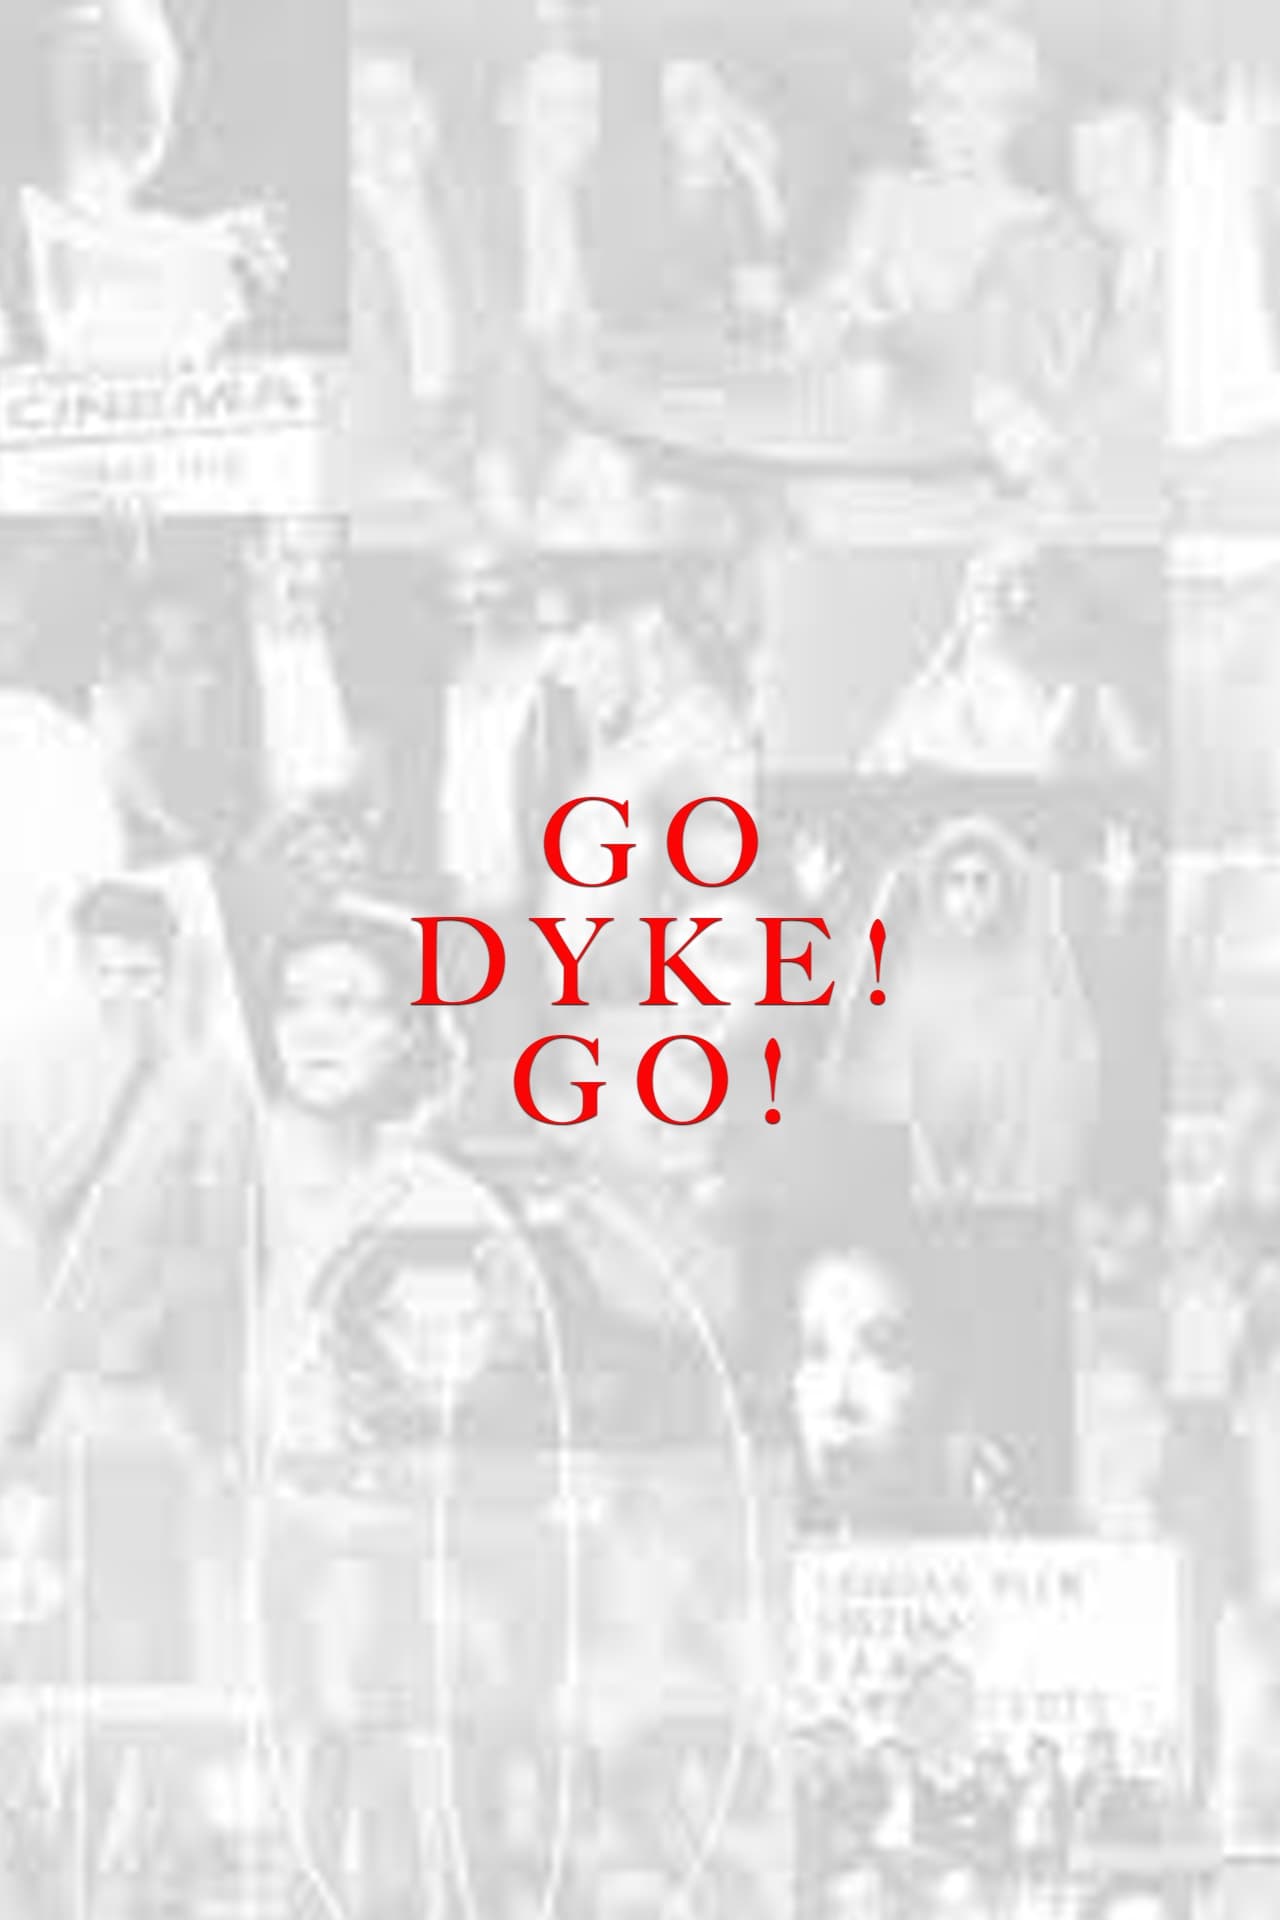 Go Dyke! Go!